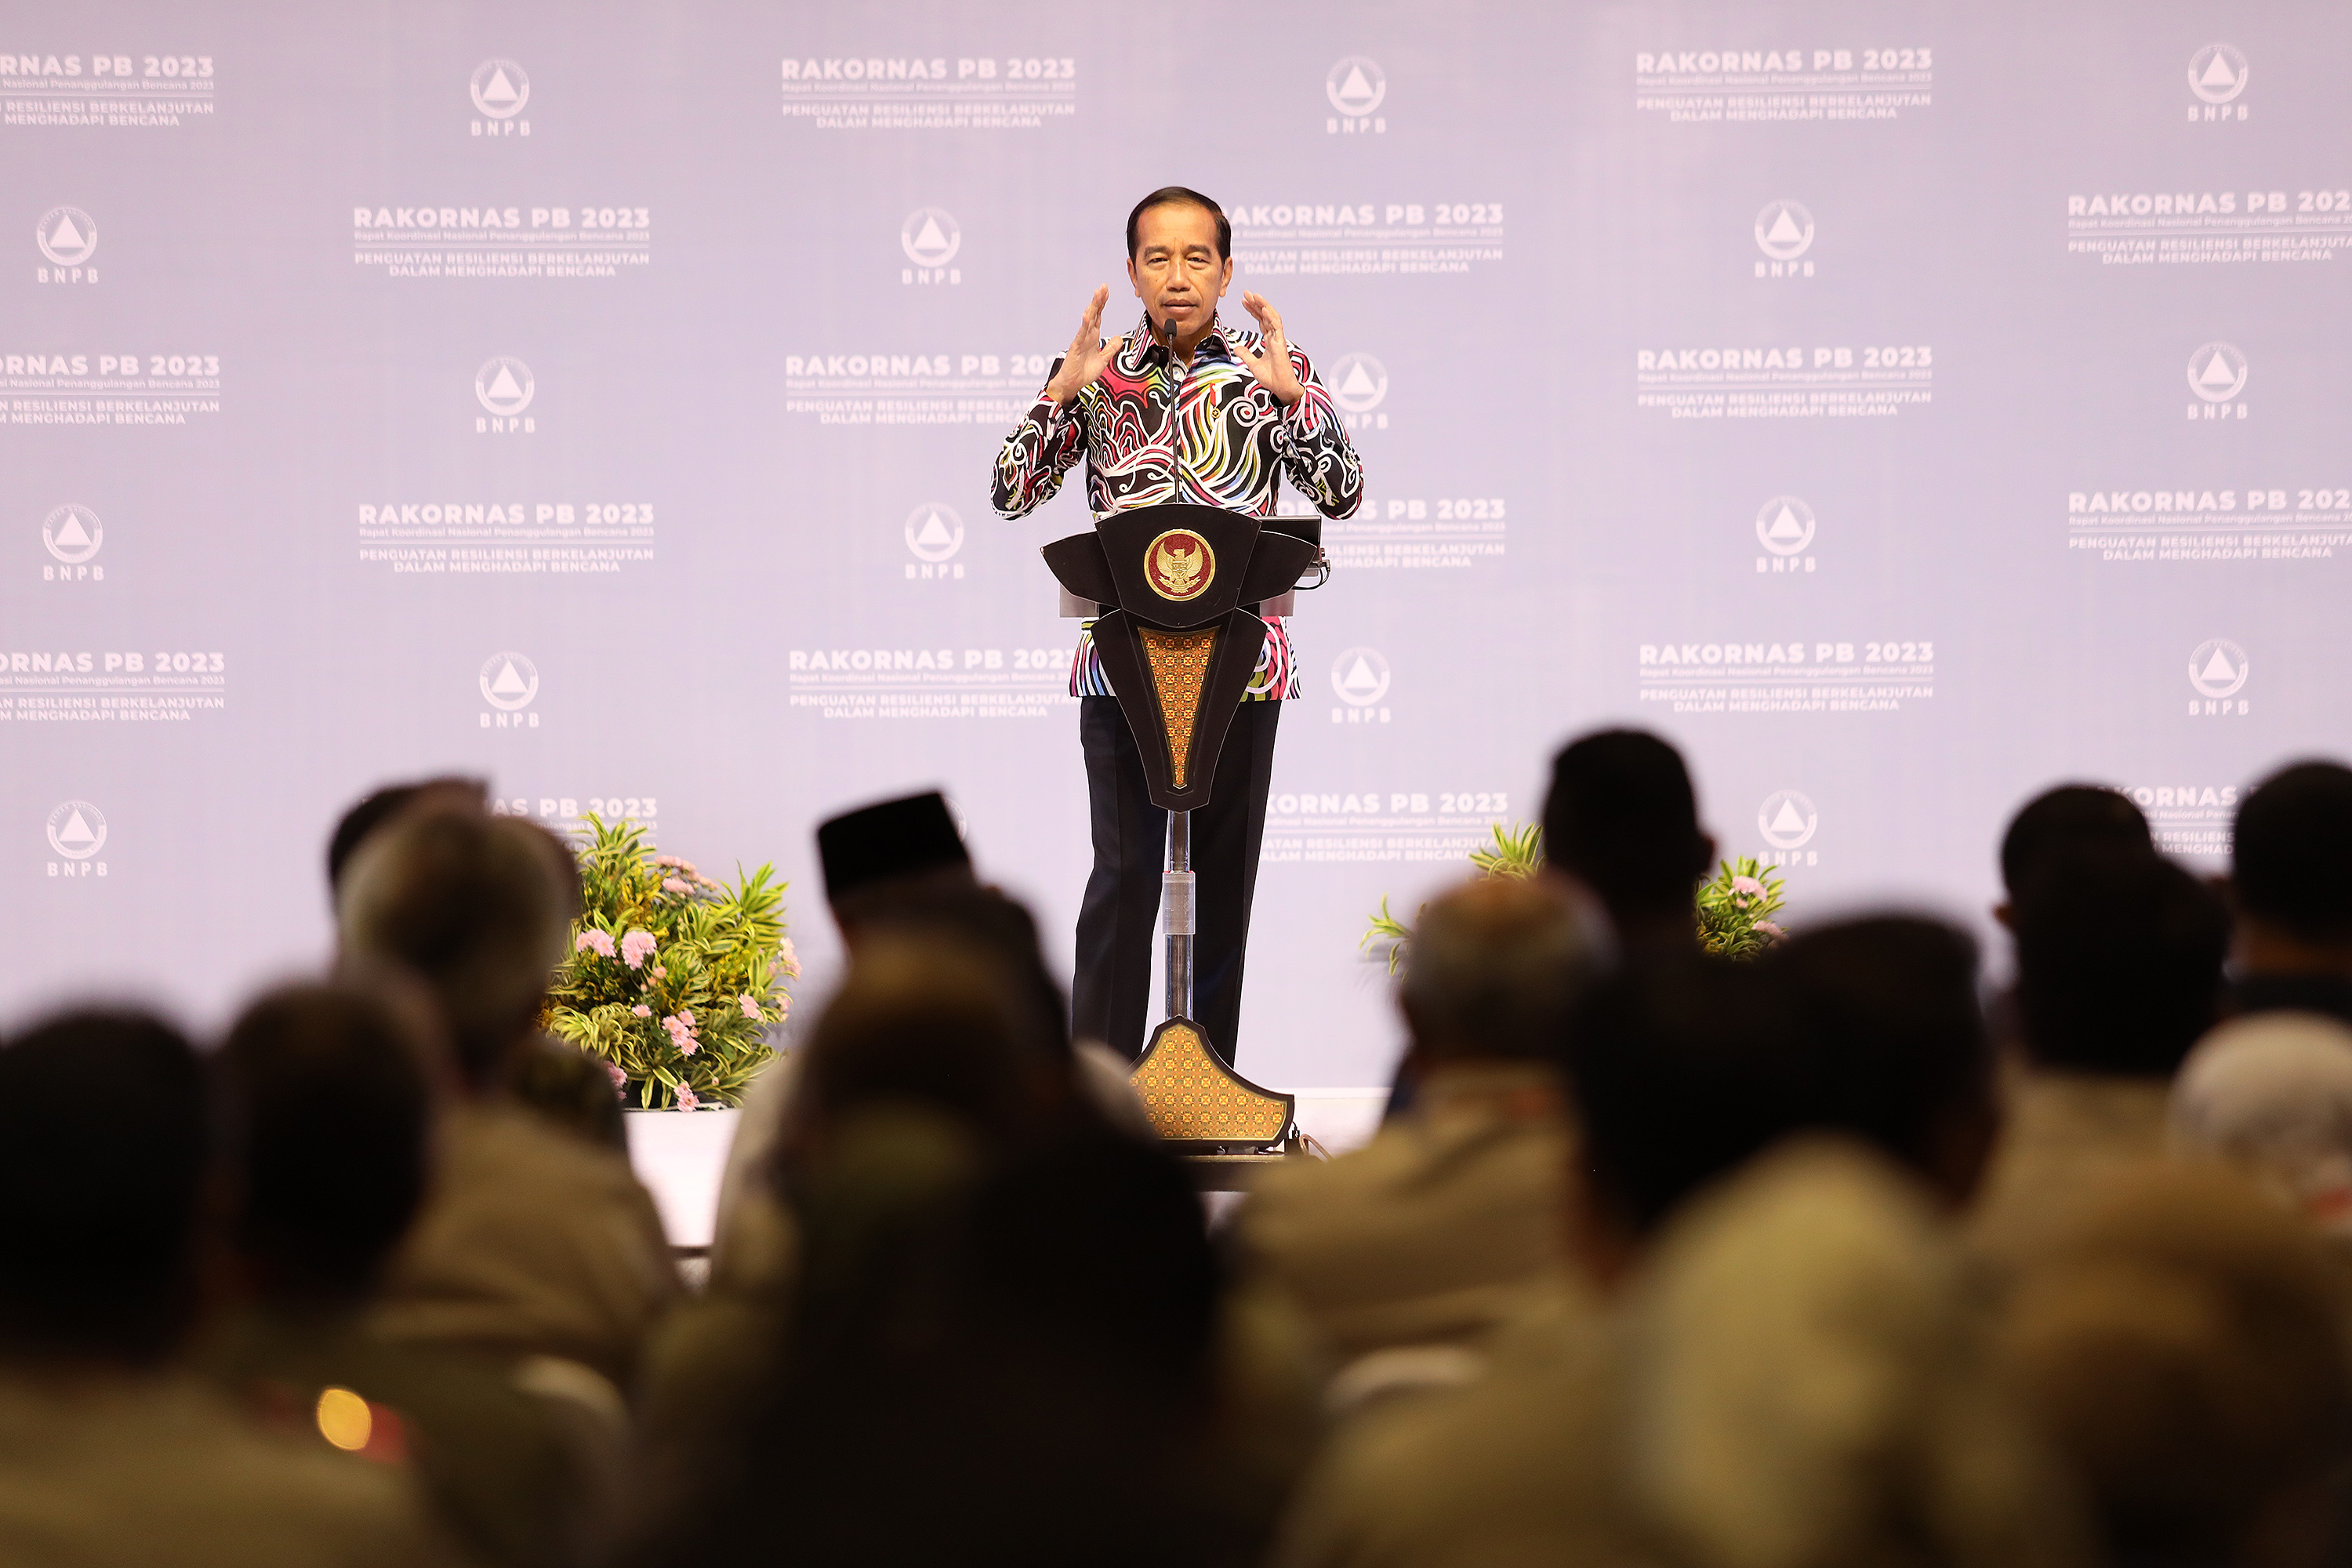 Presiden Joko Widodo memberikan arahan dalam Rapat Koordinasi Nasional (Rakornas) Penanggulangan Bencana (PB) Badan Nasional Penanggulangan Bencana (BNPB) tahun 2023 yang diselenggarakan di Jakarta International Expo (JiExpo) Kemayoran, Jakarta Pusat, Kamis(2/3).